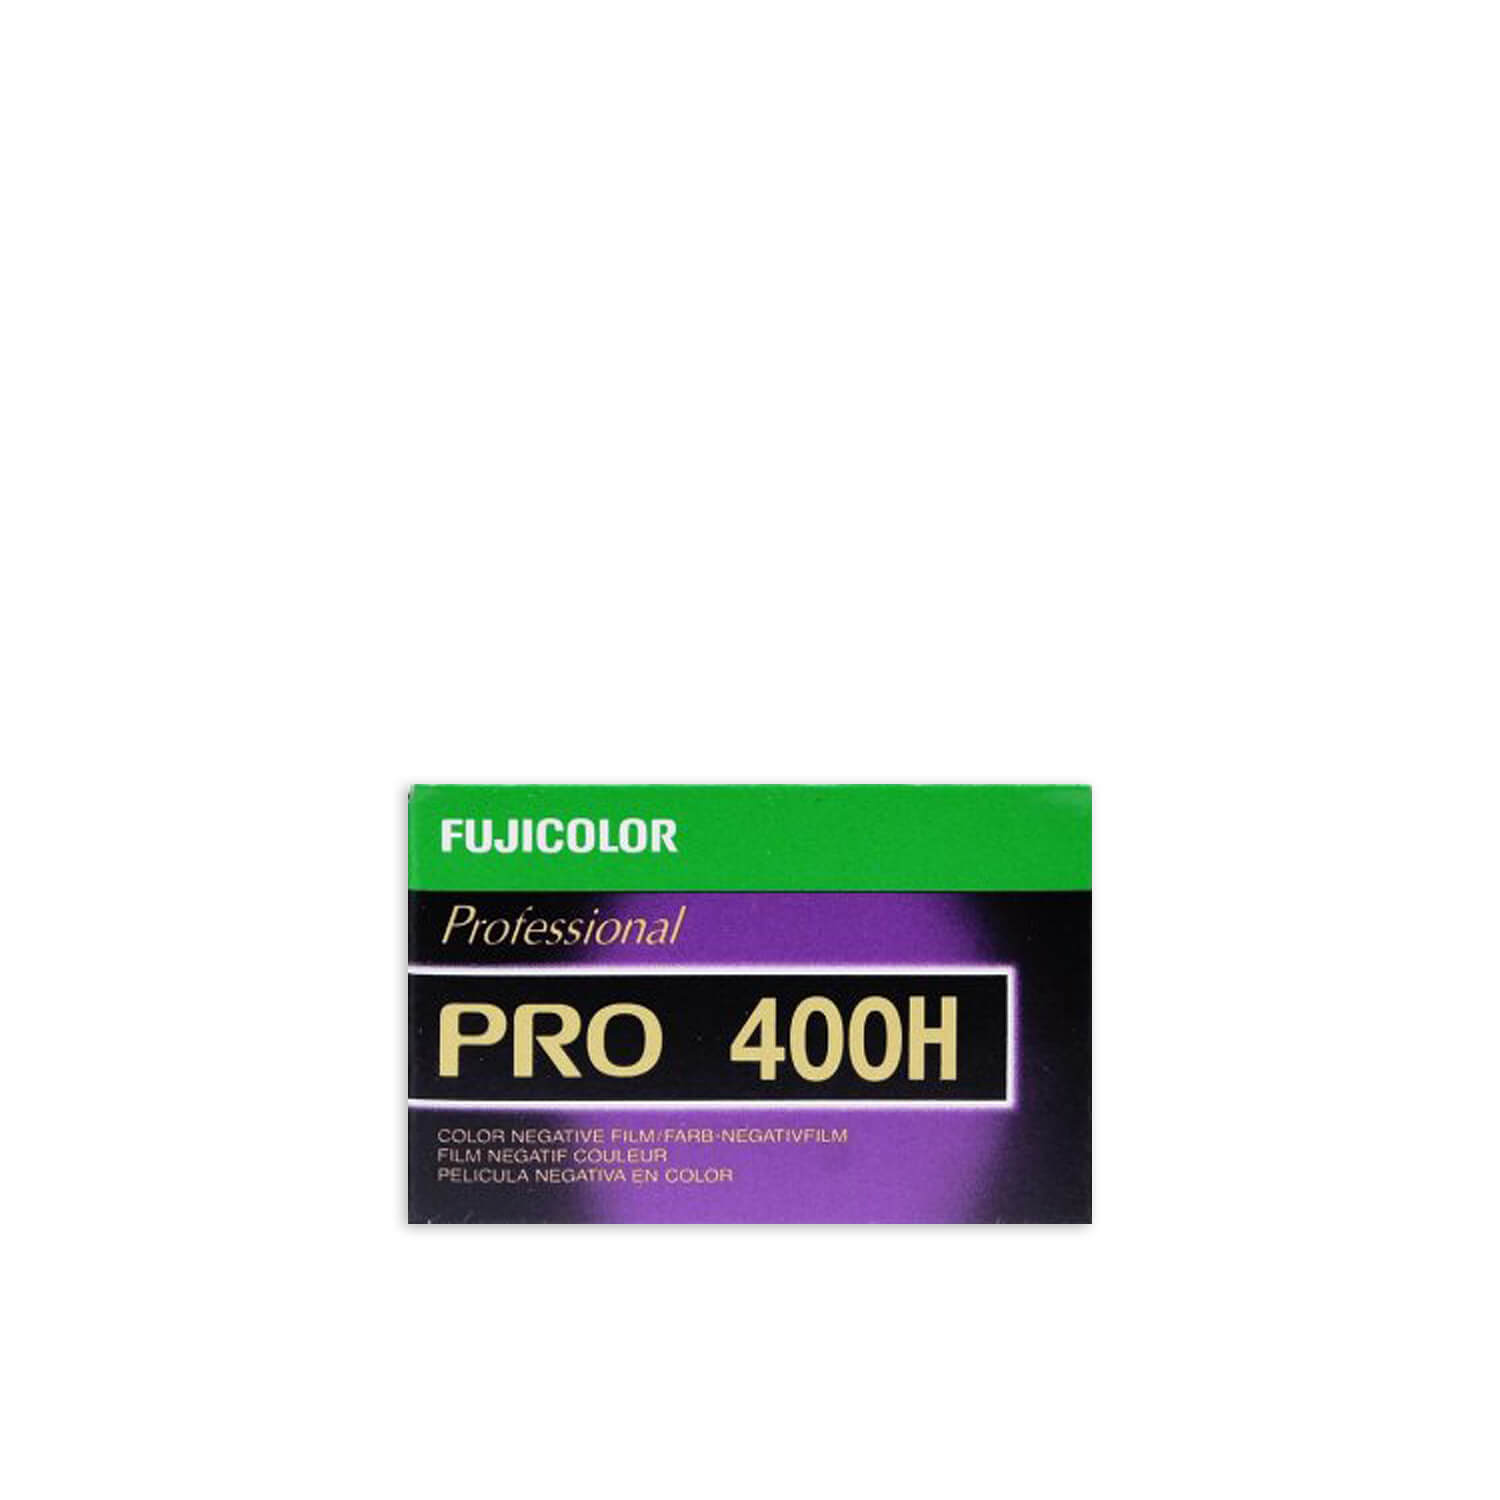 FujiColor Pro 400H